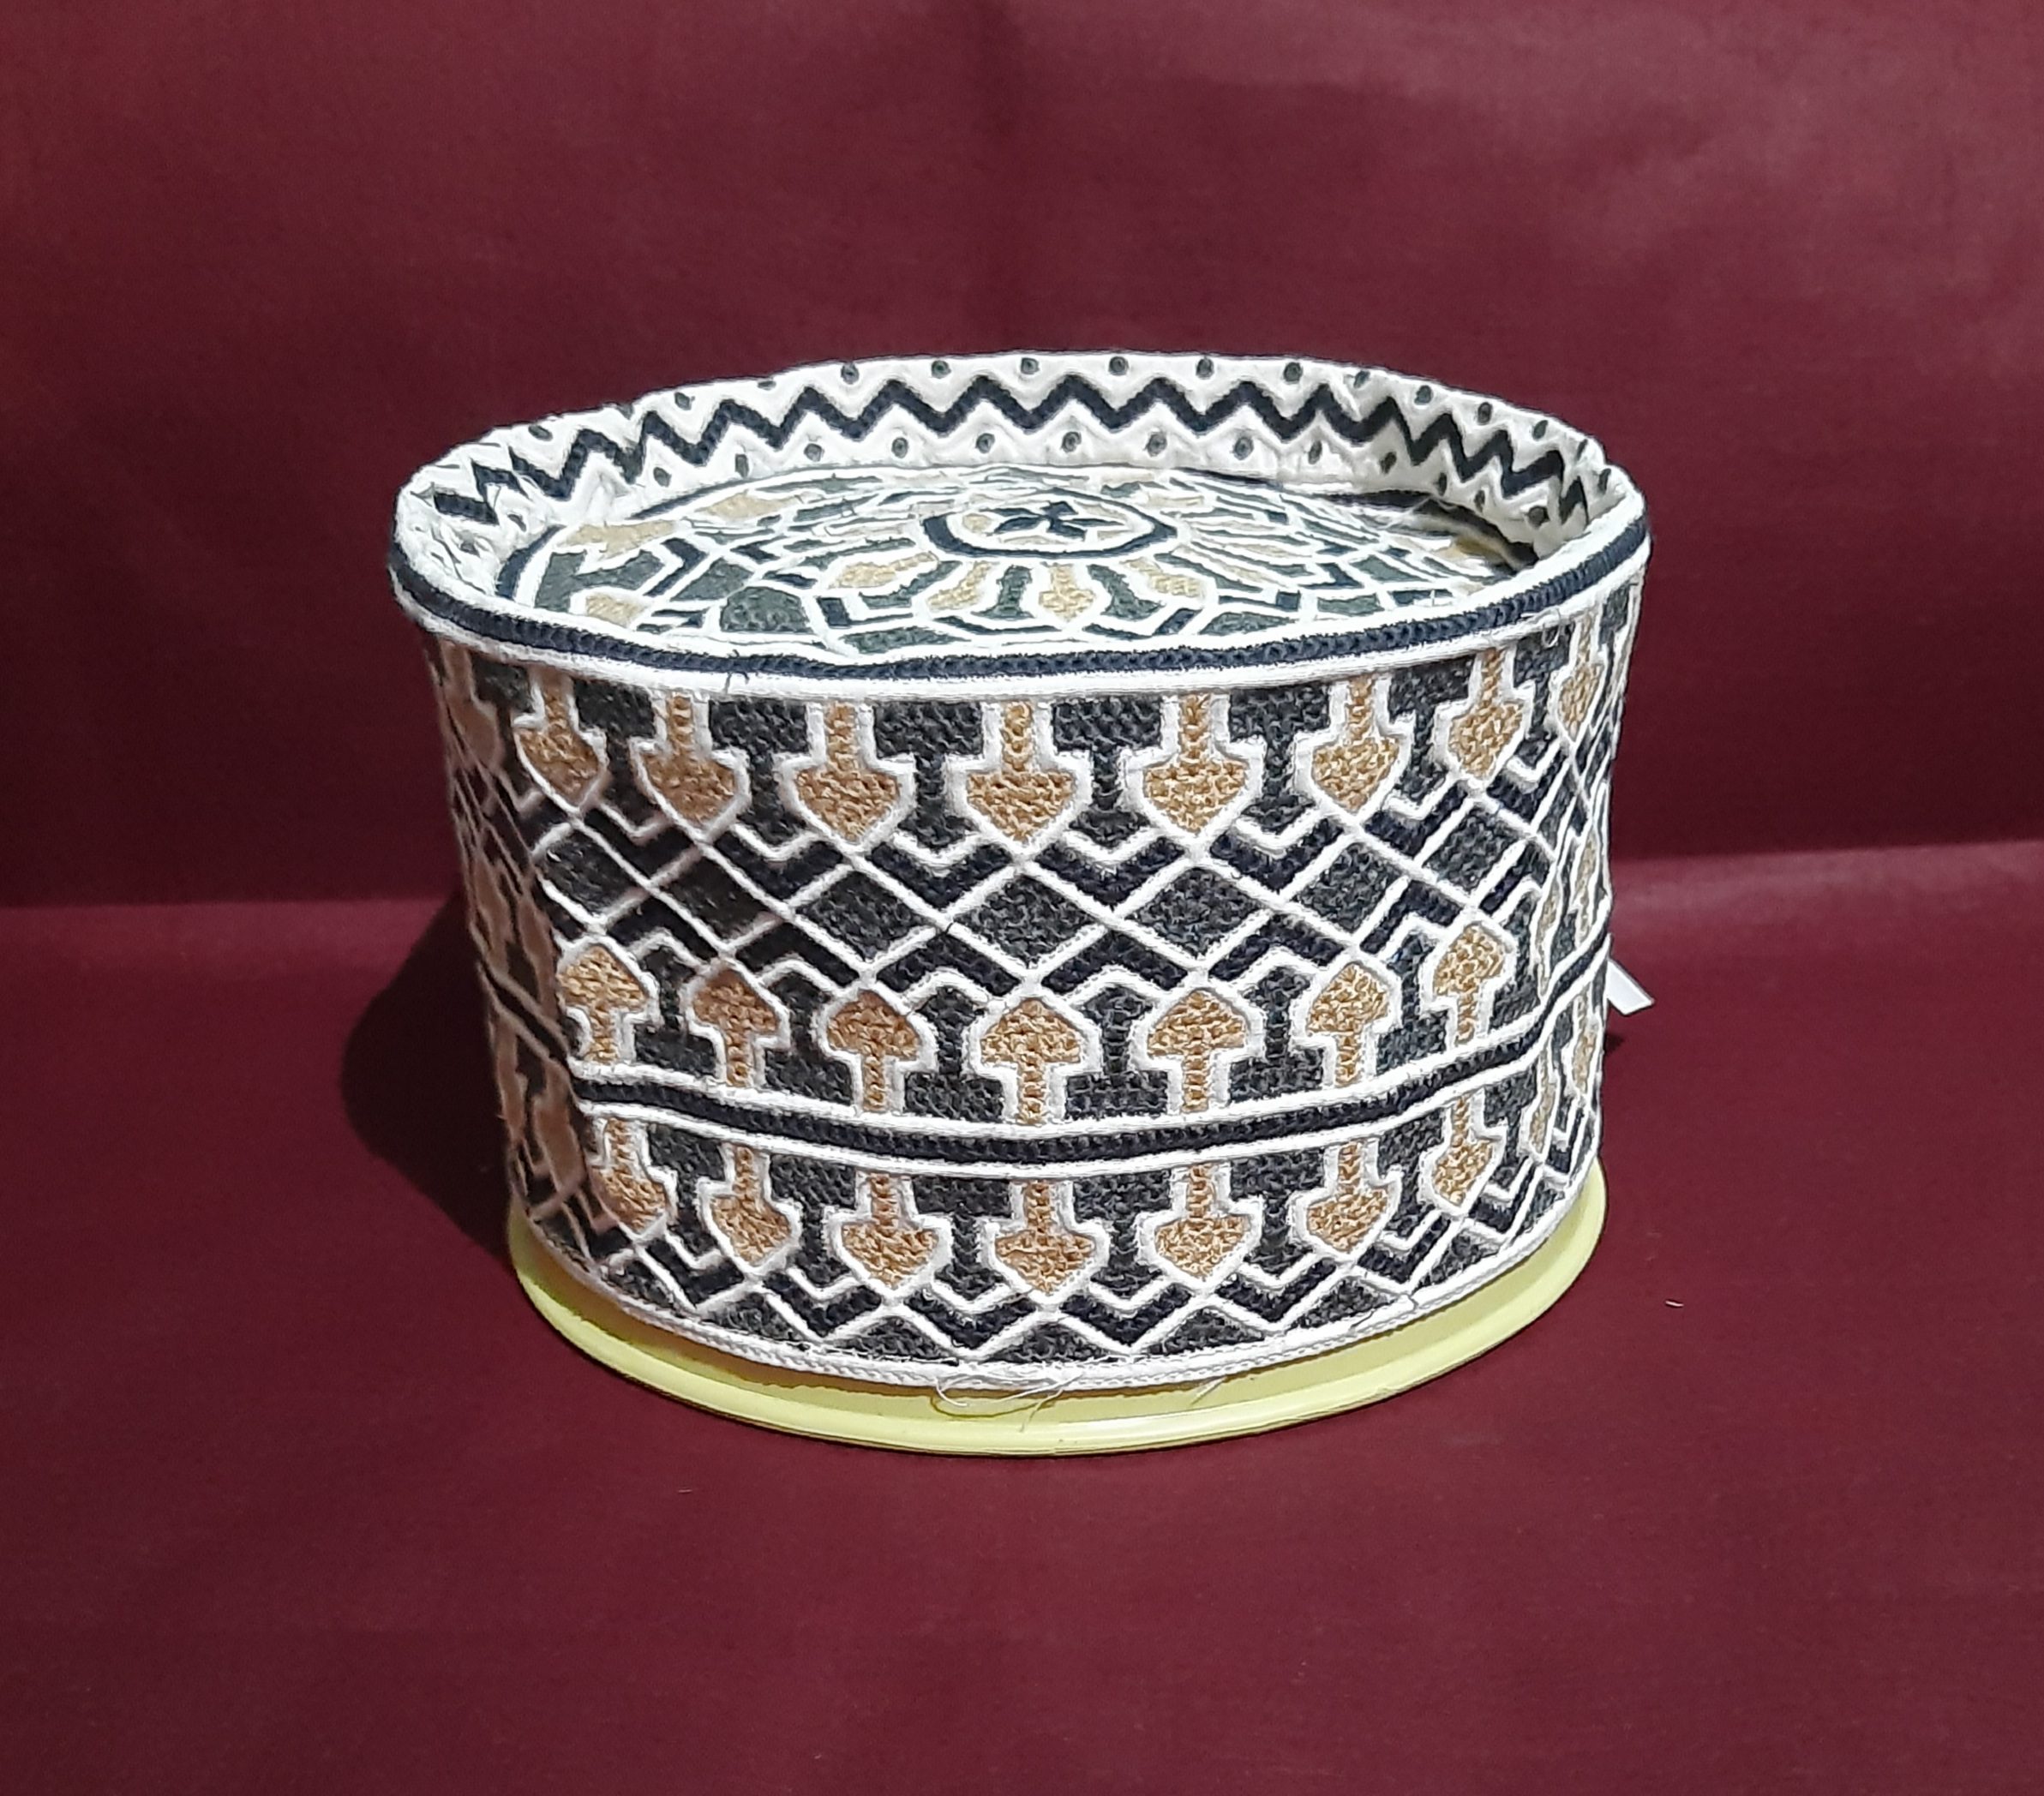 New Original Omani Barkati Cap Soft Cotton Material modal no. 108 Size 21.5 (Barkati Topi)